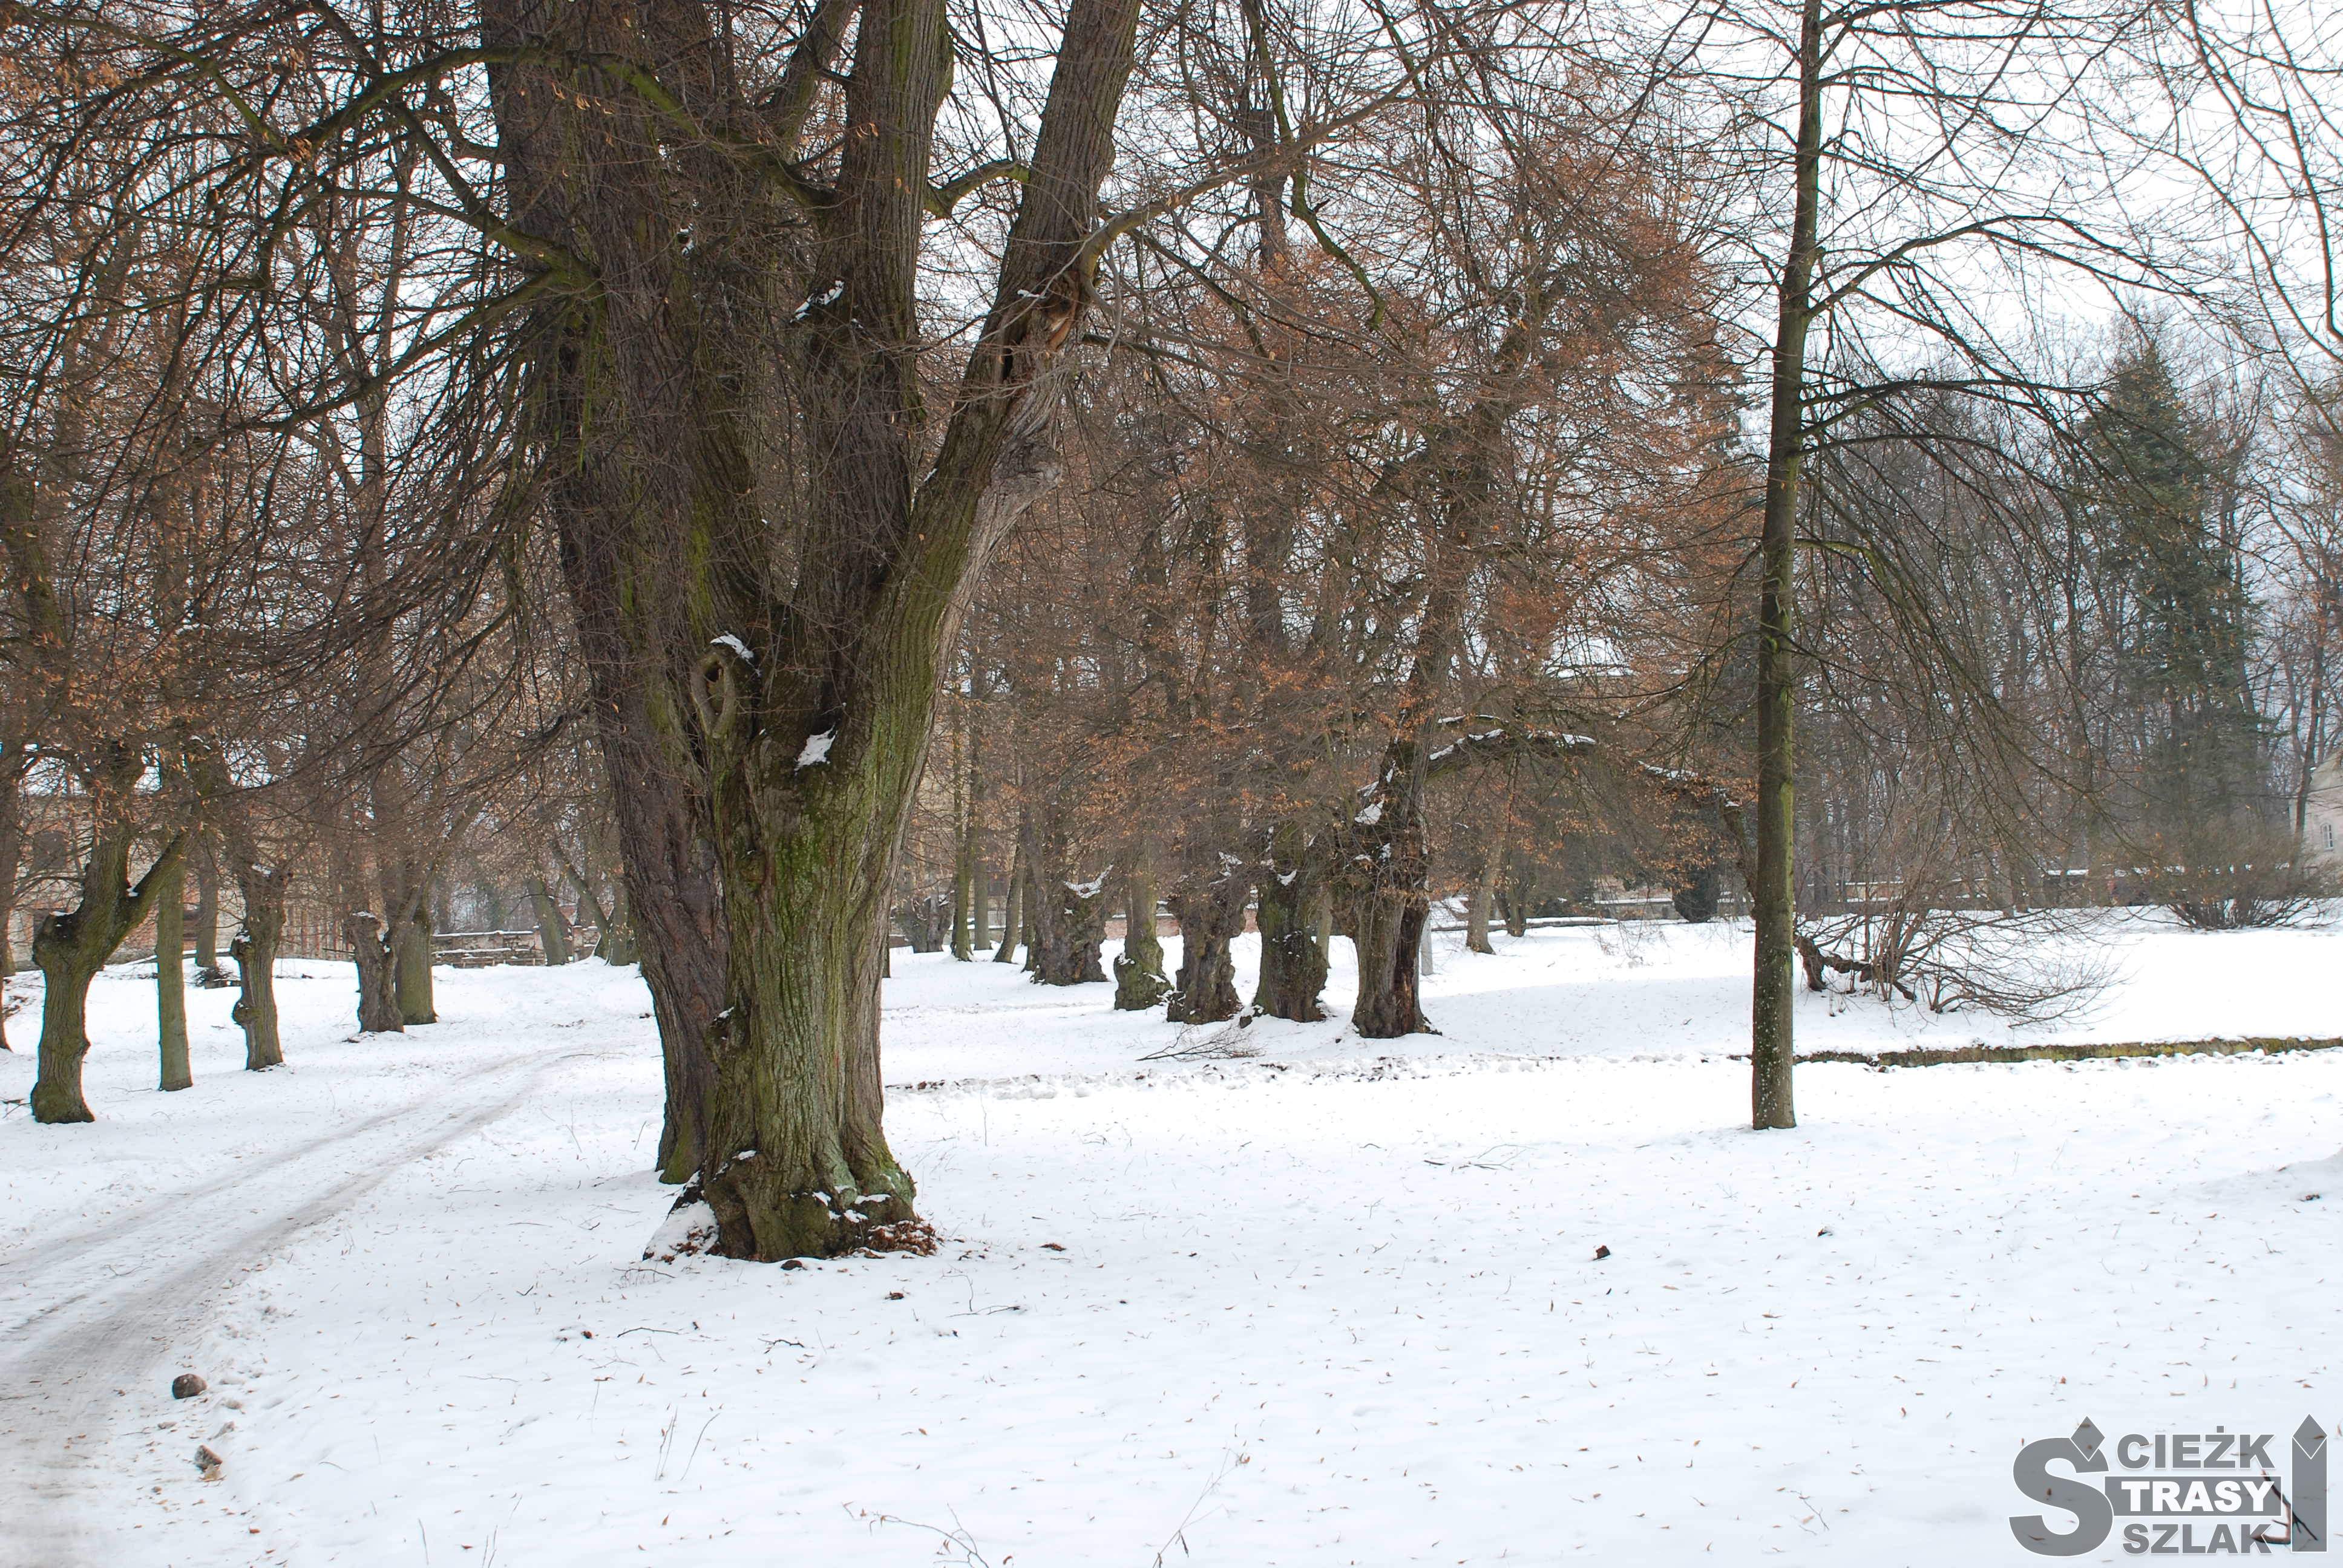 Aleja z pomników przyrody - starych drzew na terenie założenia pałacowo-parkowego przy Pałacu w Pilicy